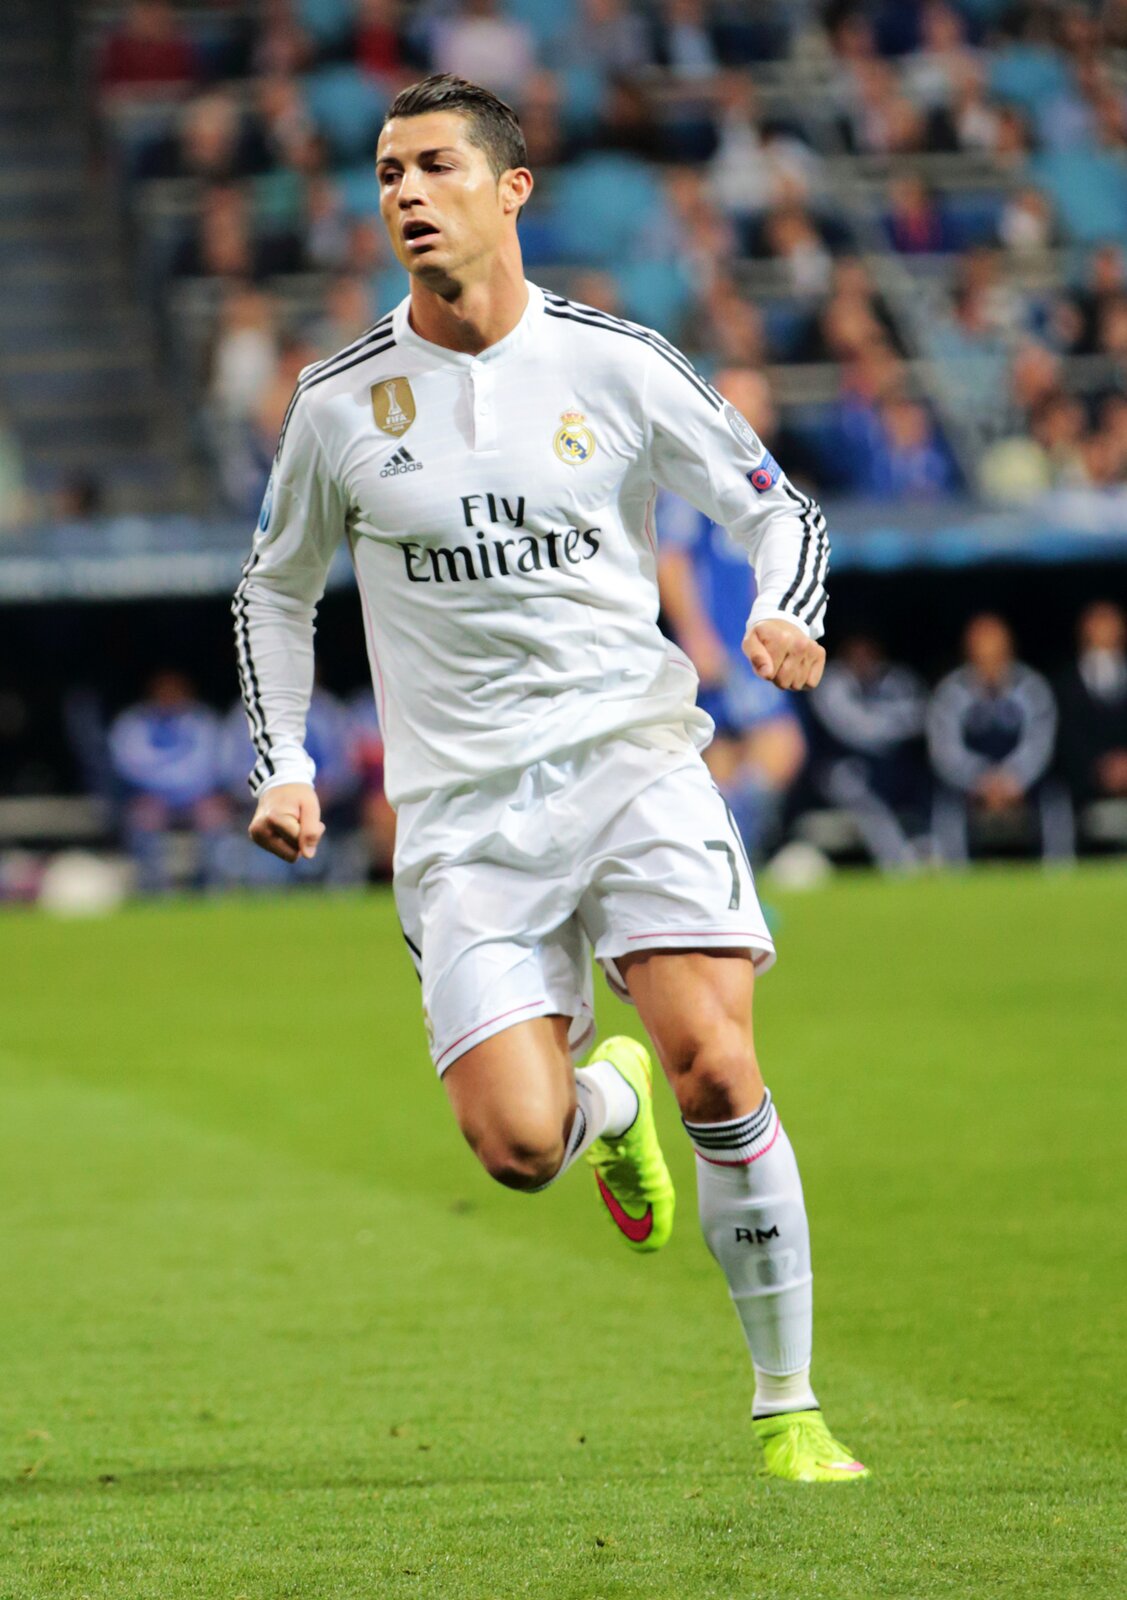 Na zdjęciu został przedstawiony Cristiano Ronaldo. Mężczyzna ma czarne włosy. Są zaczesane gładko do tyłu. Ma otwarte delikatnie usta. Patrzy w prawą stronę.  Jest ubrany w białą koszulkę z długim rękawem. Ma czarne trzy paski na rękawach. Z przodu na bluzce, na środku znajduje się napis: „Fly  emirates”. Po prawej stronie jest logo firmy Adidas. Powyżej został umieszczony złoty znaczek, gdzie znajduje się napis Fifa. Po lewej stronie jest herb klubu. Ma krótkie białe spodenki oraz białe getry z czarnymi prążkami u góry. Na stopach ma jaskrawe korki z czerwonym logiem Nike. Piłkarz ma zaciśnięte pięści u obu rąk. Prawa noga jest zgięta i uniesiona do góry. Stoi na lewej  nodze. Biegnie po zielonej murawie. W tle są rozmyte trybuny sportowe.